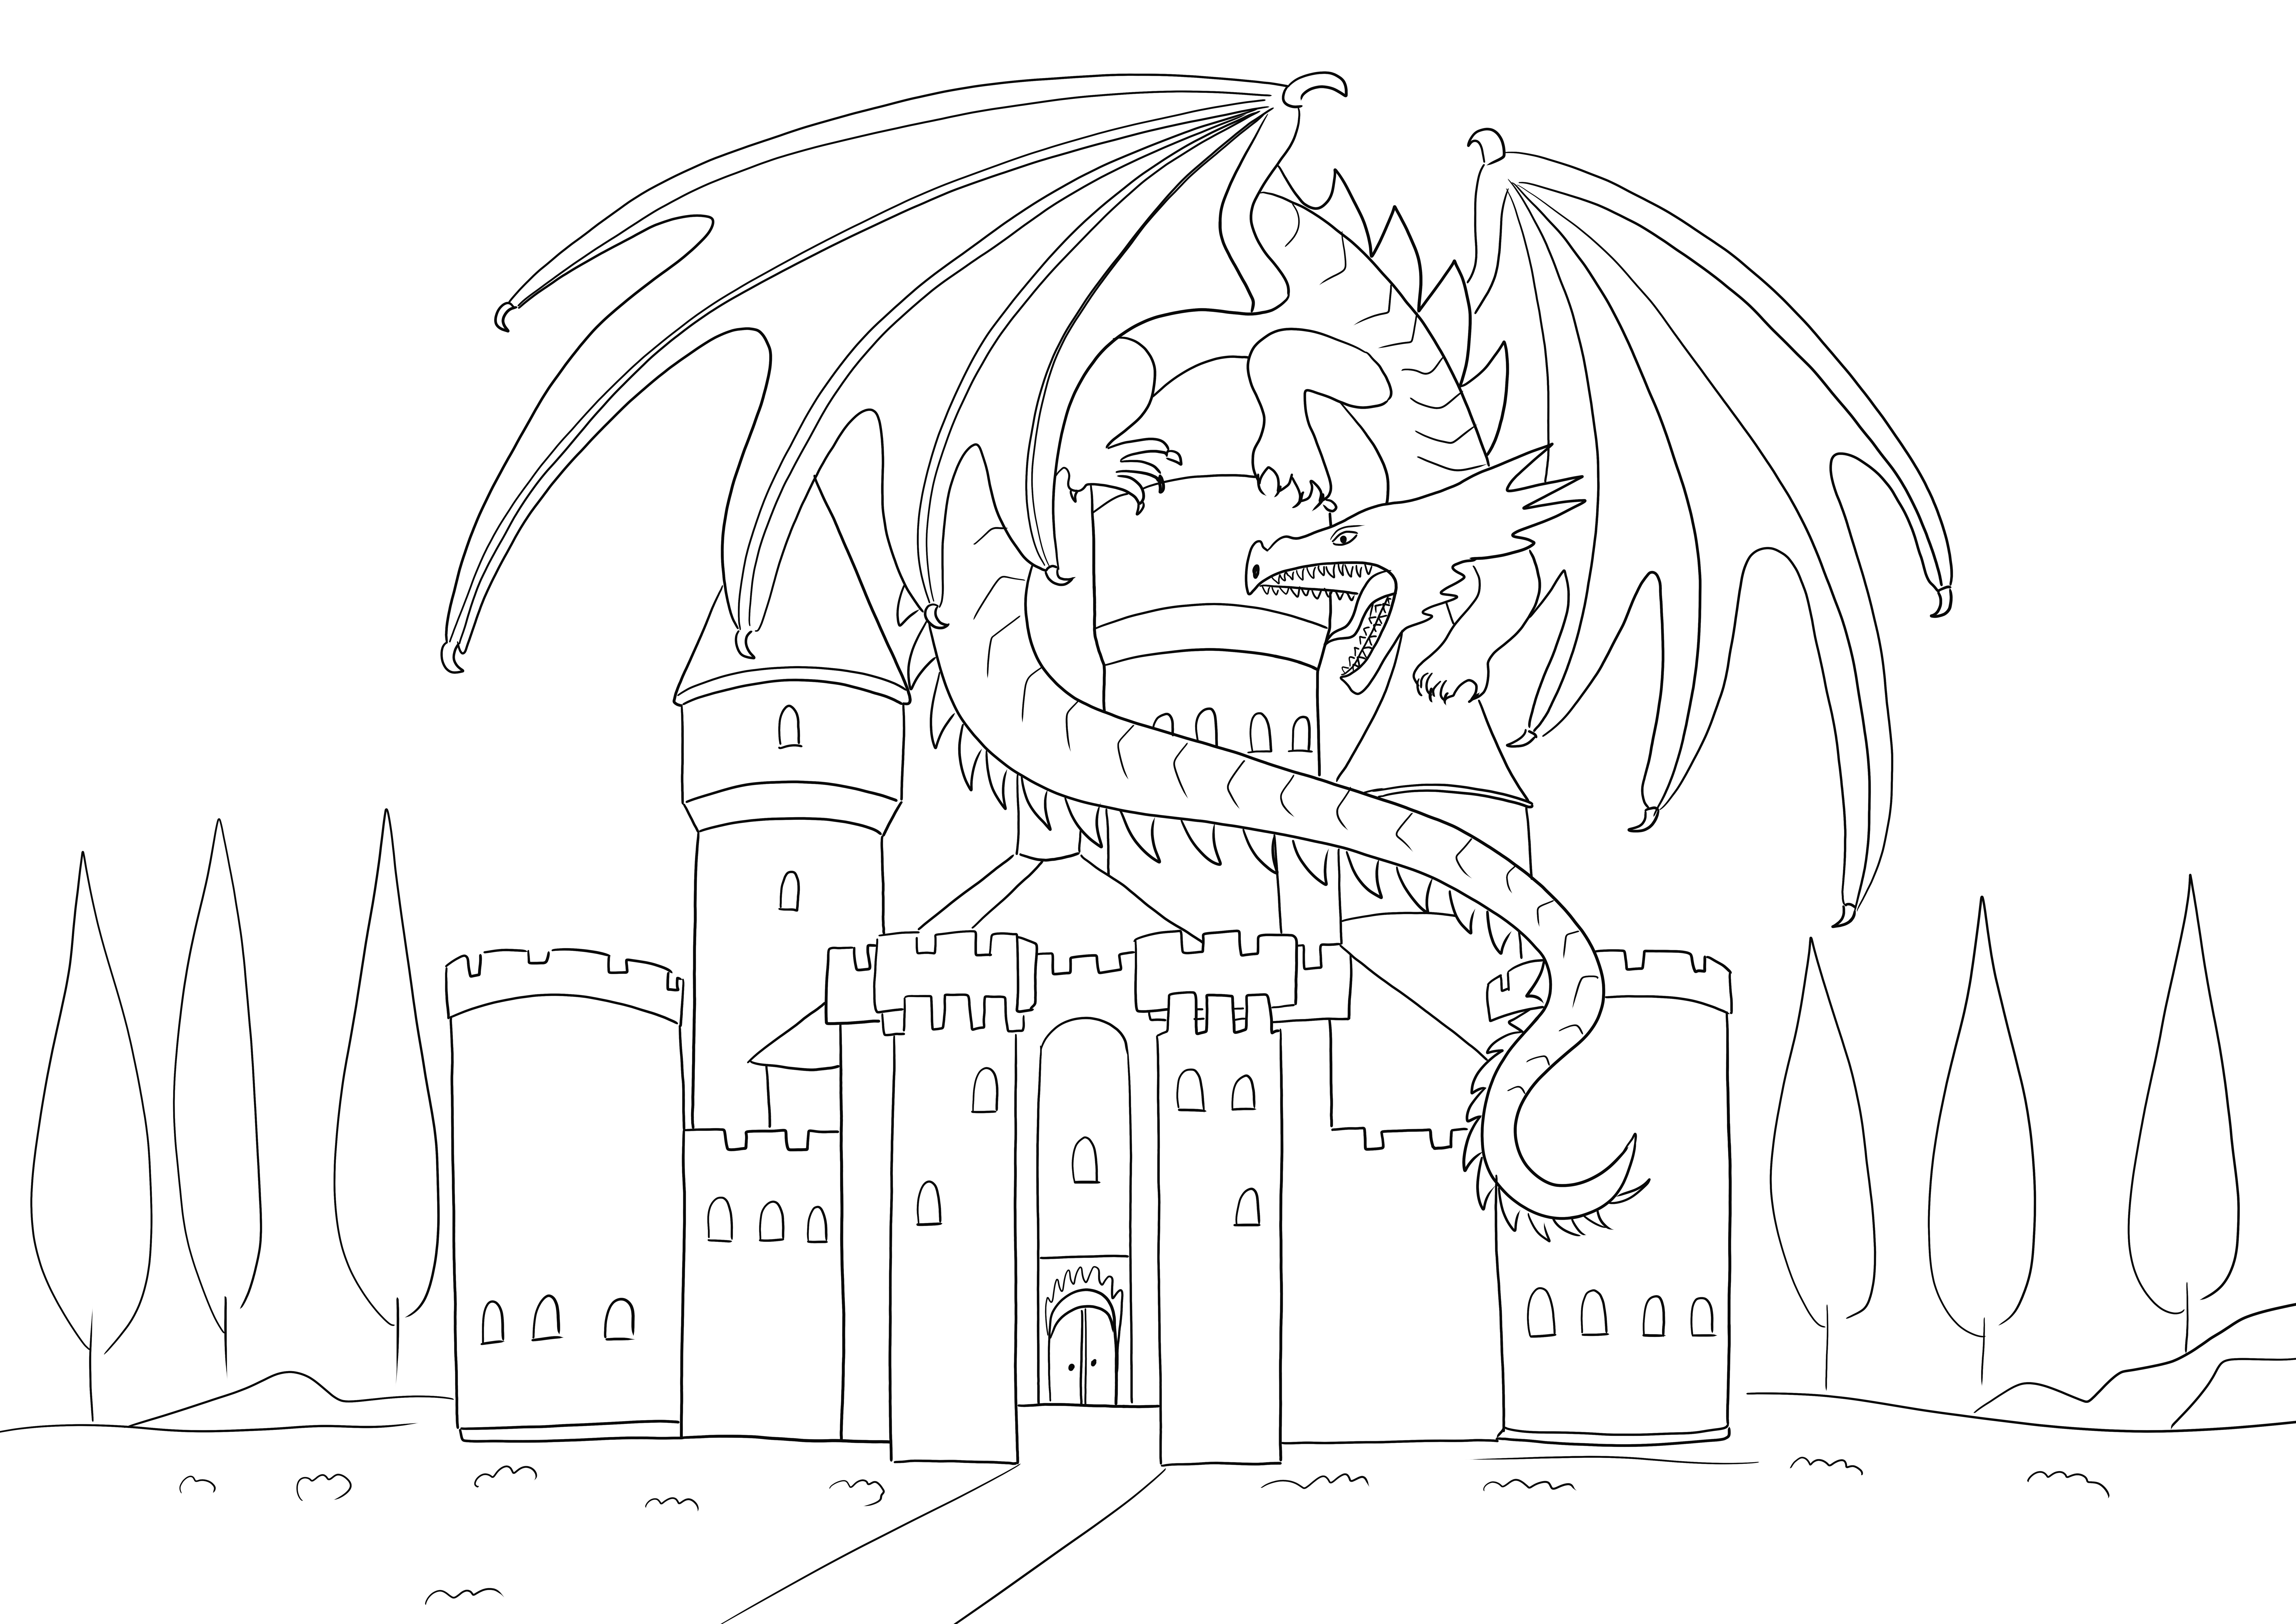 Dragon and Castle siap untuk dicetak dan diwarnai untuk anak-anak